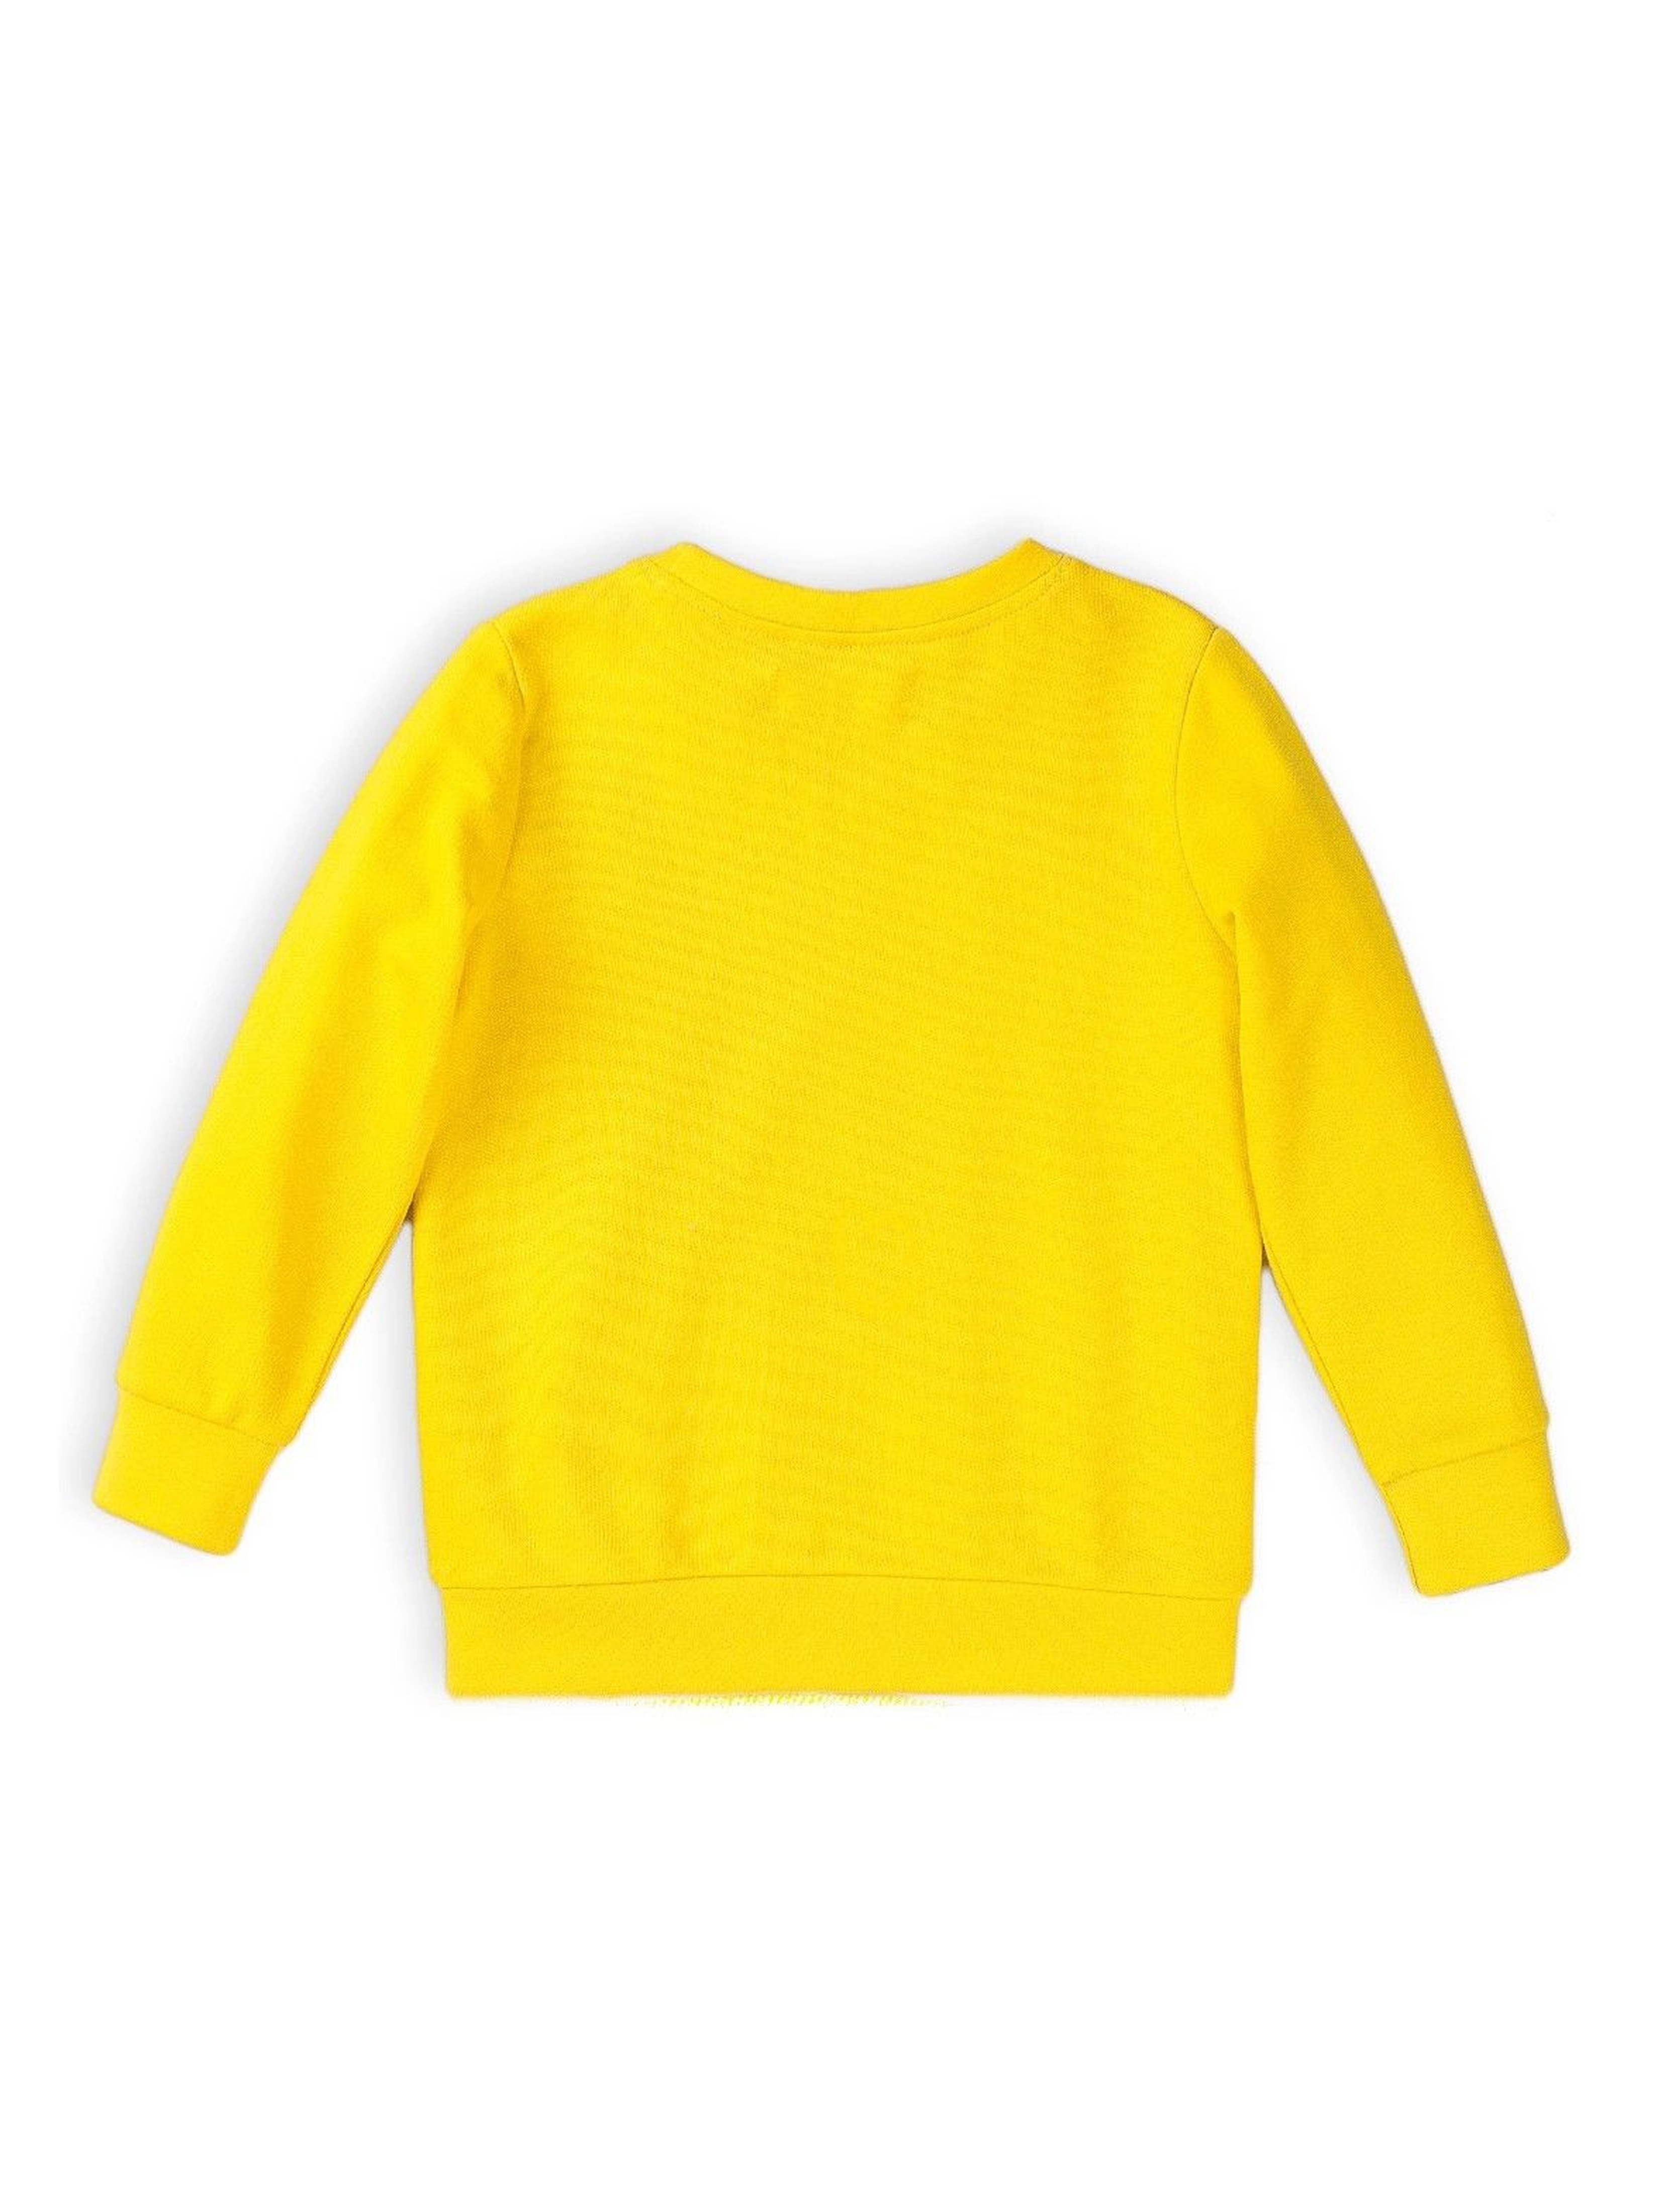 Bluza dresowa chłopięca w kolorze żółtym- One Way